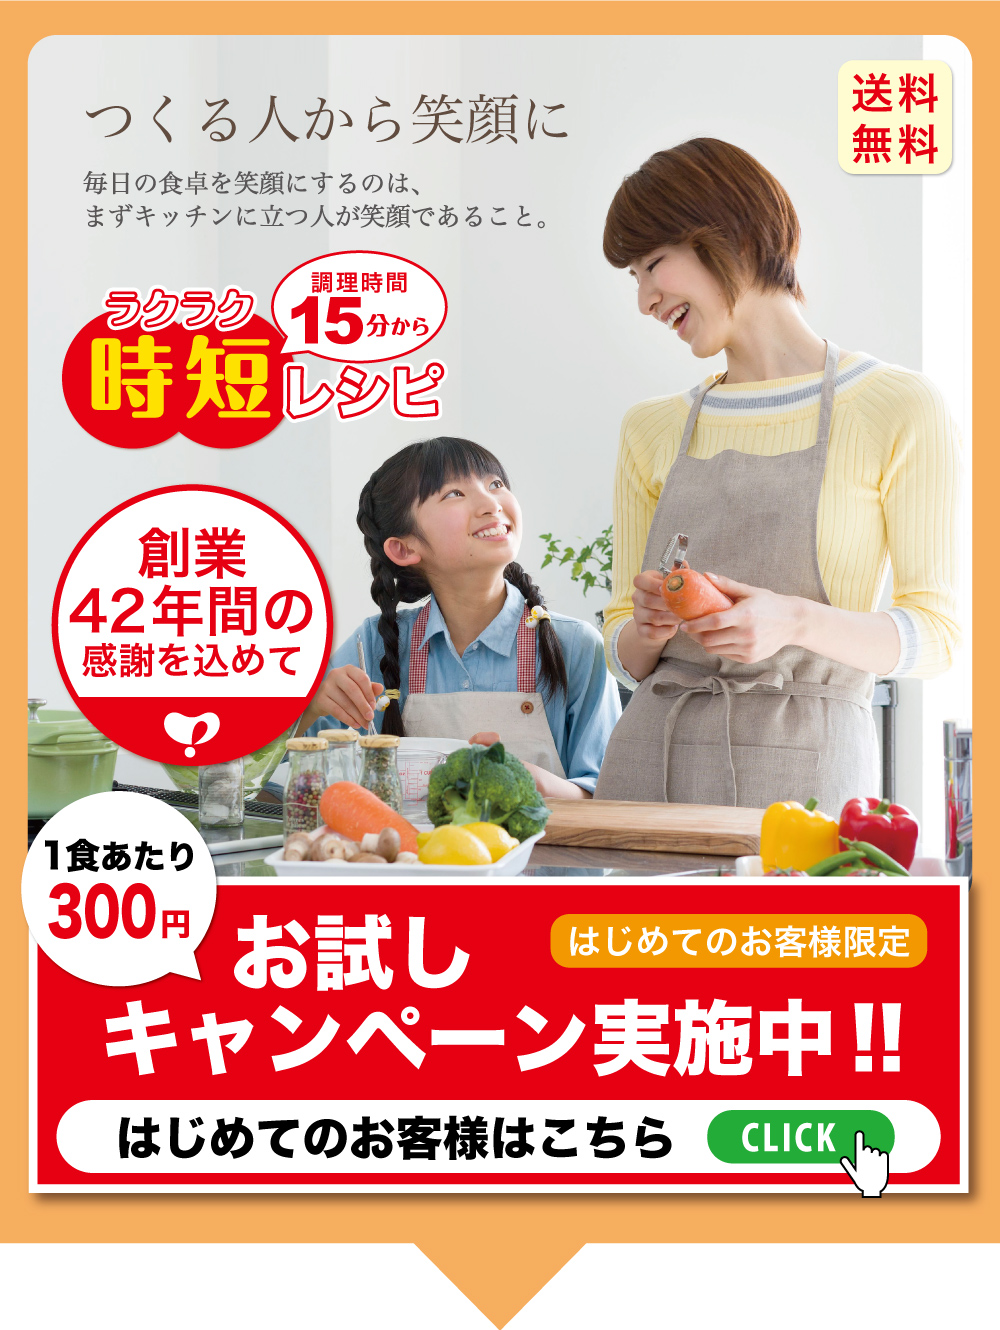 公式 夕食食材宅配のヨシケイこうべ ヨシケイ ナラ 1週間お試しキャンペーン